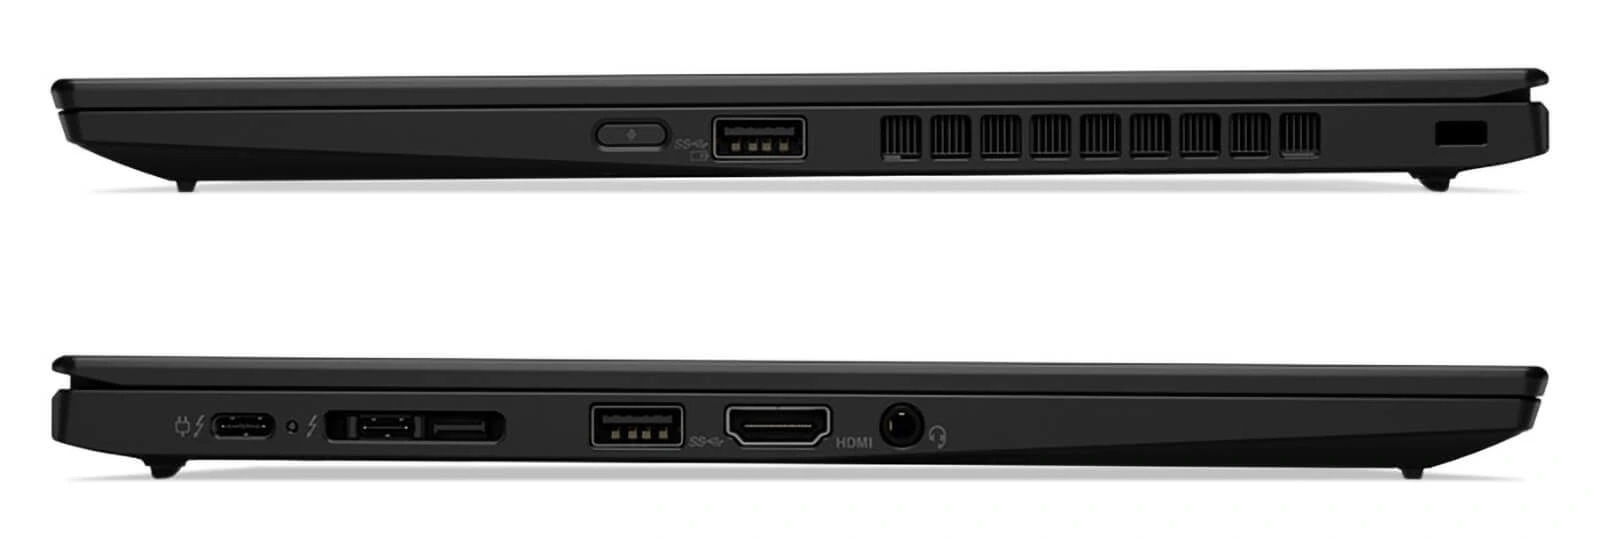 Lenovo Thinkpad X1 Carbon Gen 7 i7 8665U 8CPUS/ Ram16G/ SSD256/ Full HD/ Gập 180 độ/ Siêu Mỏng/ Giá rẻ